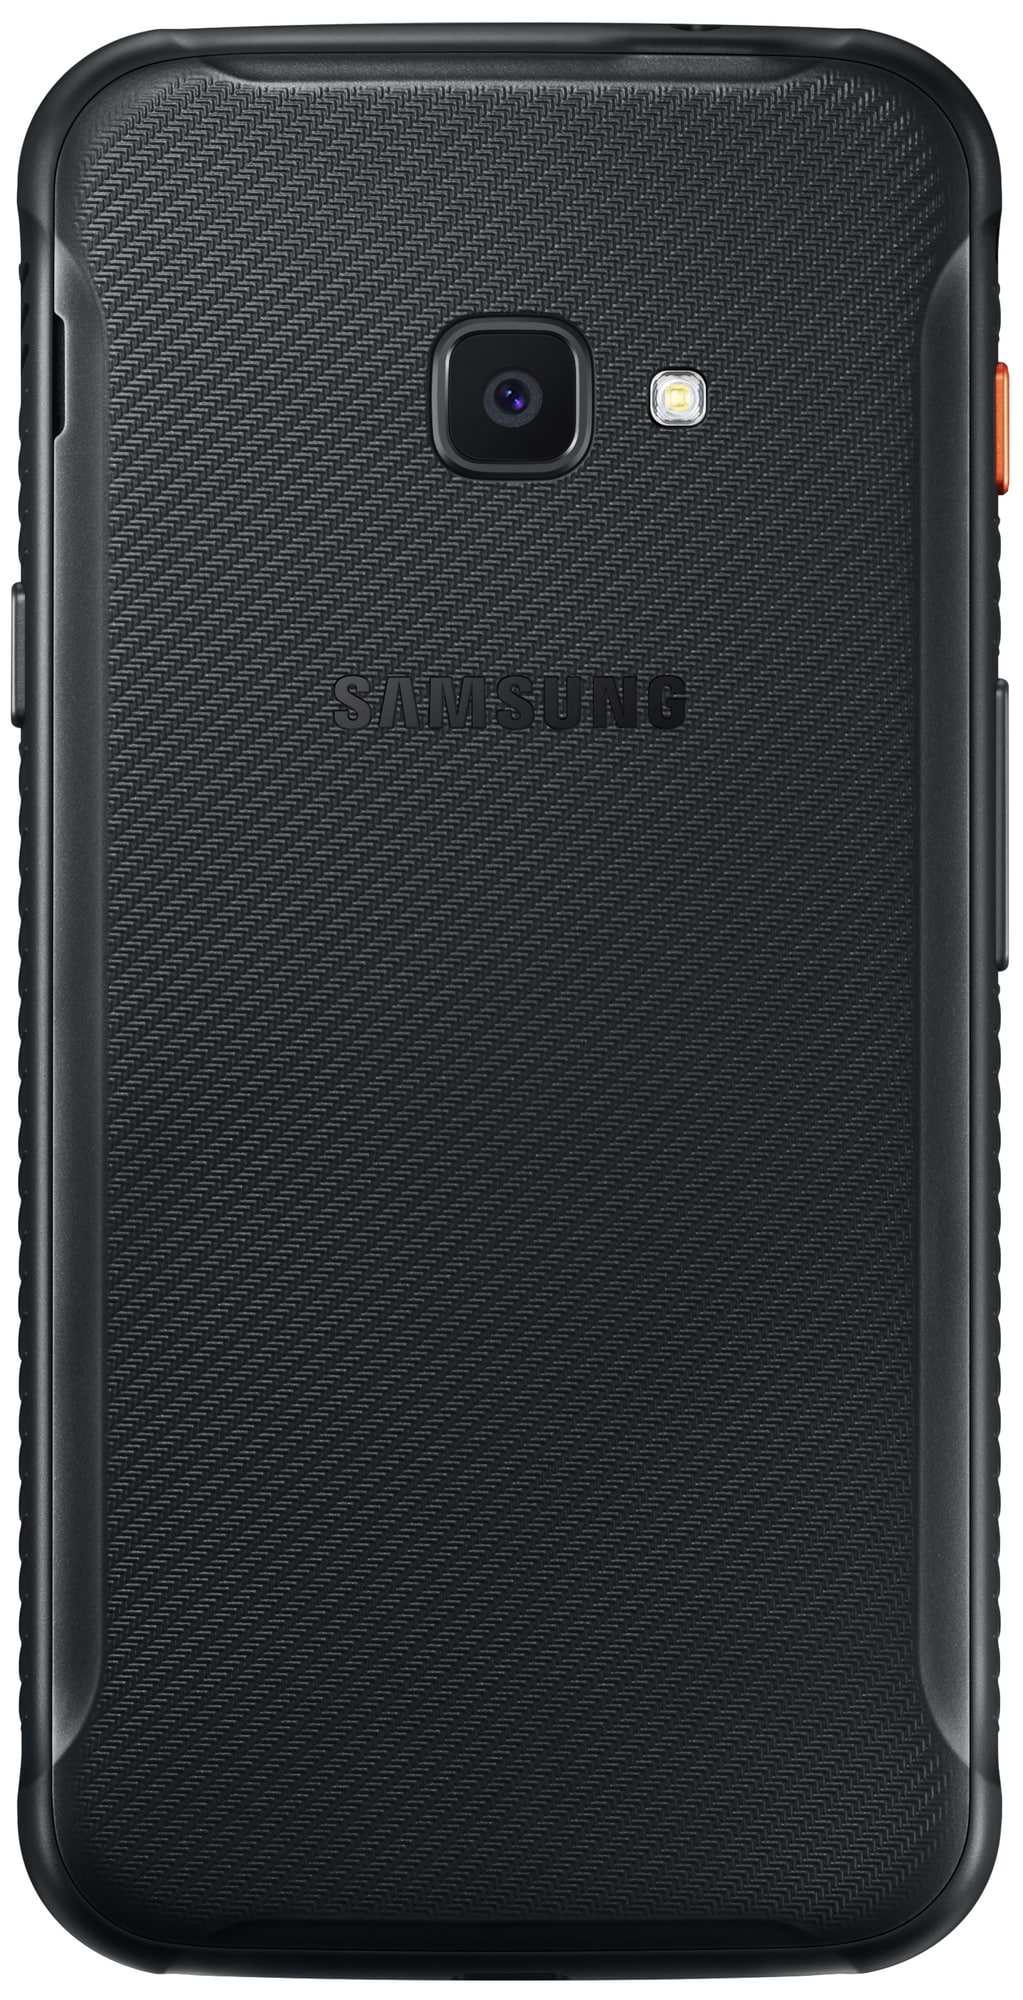 Samsung Galaxy XCover 4s smartphone - Mobiltelefoner - Elgiganten